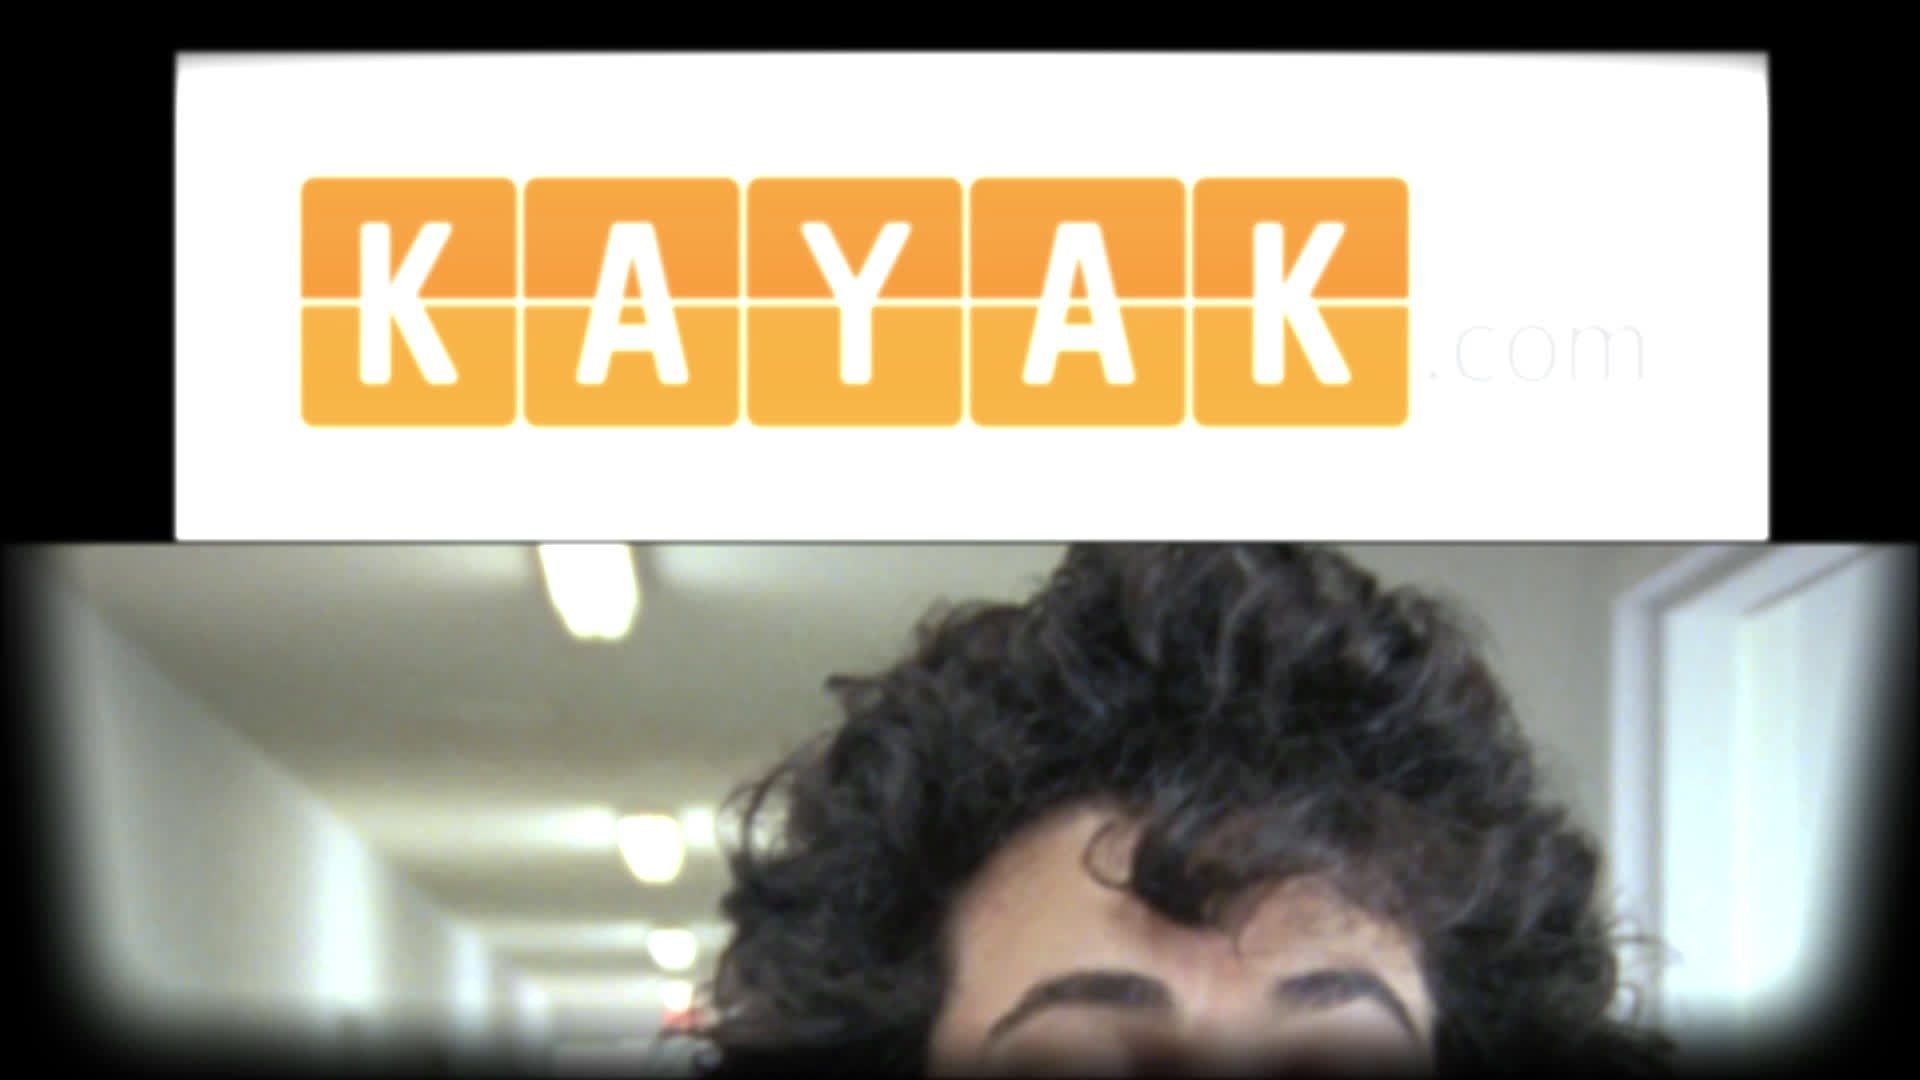 KAYAK.COM